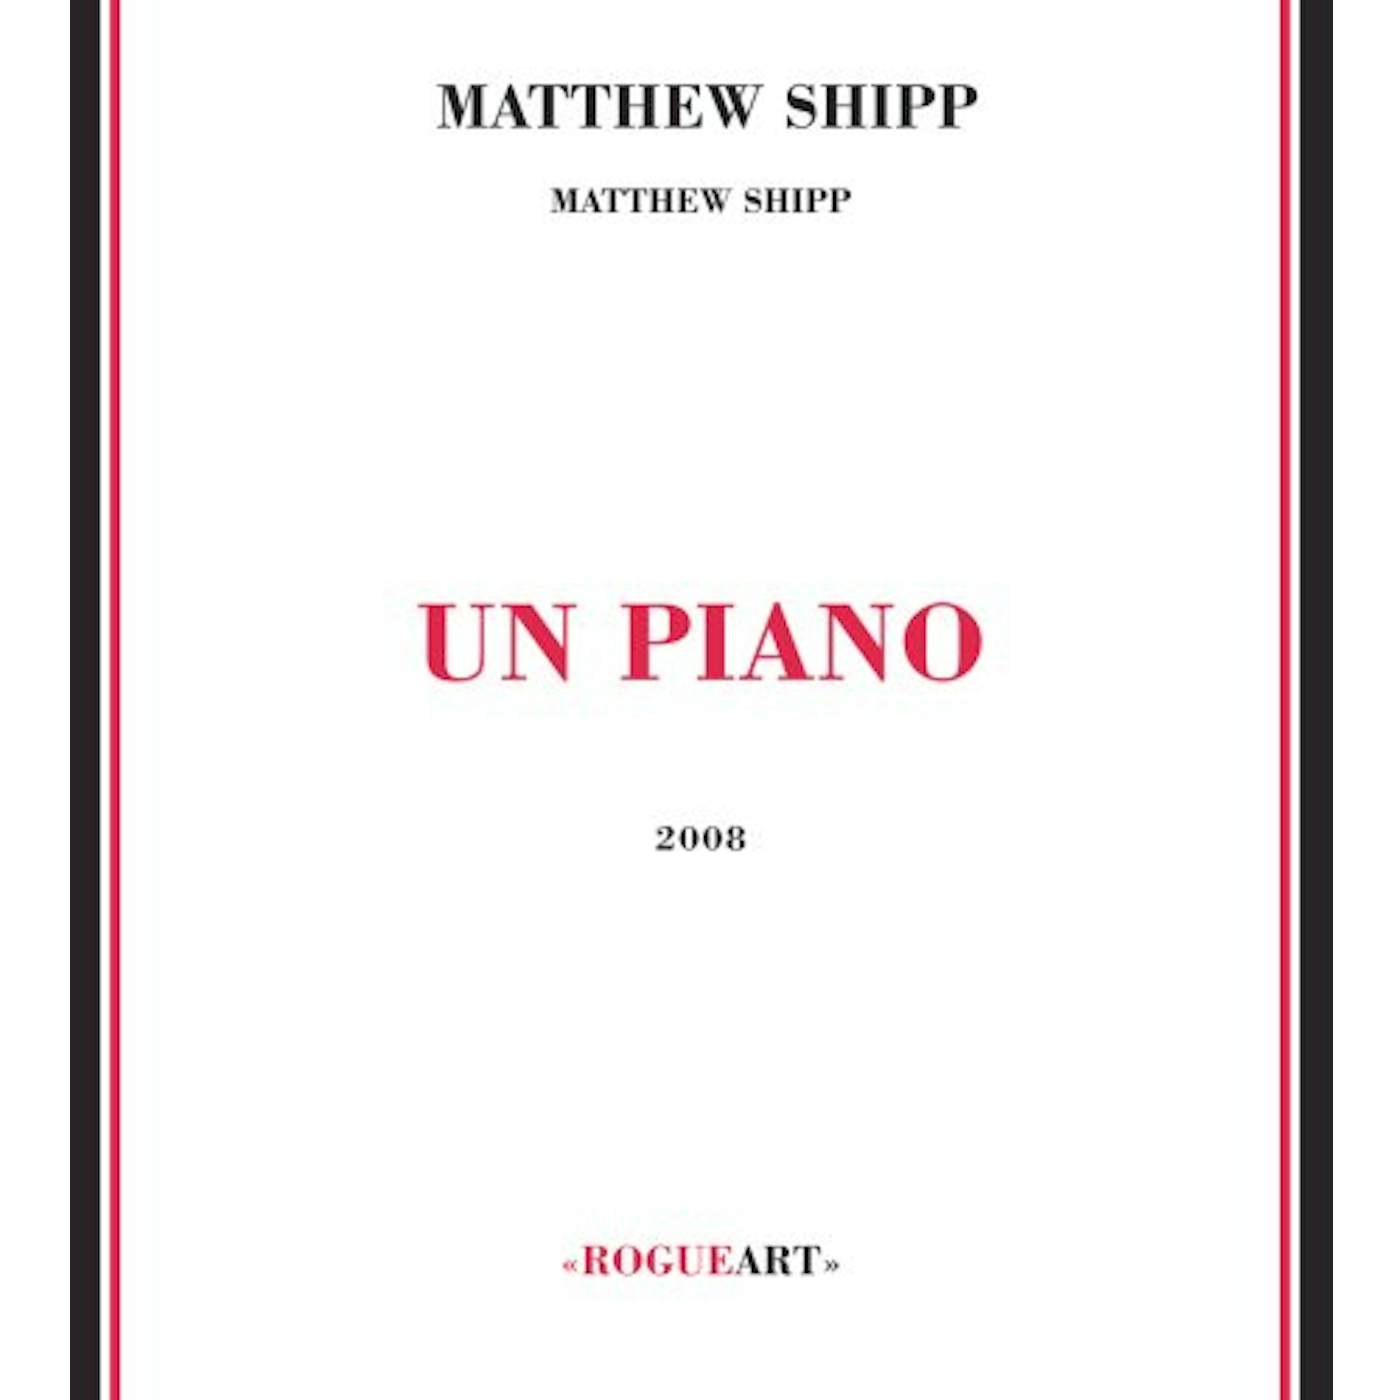 Matthew Shipp UN PIANO CD